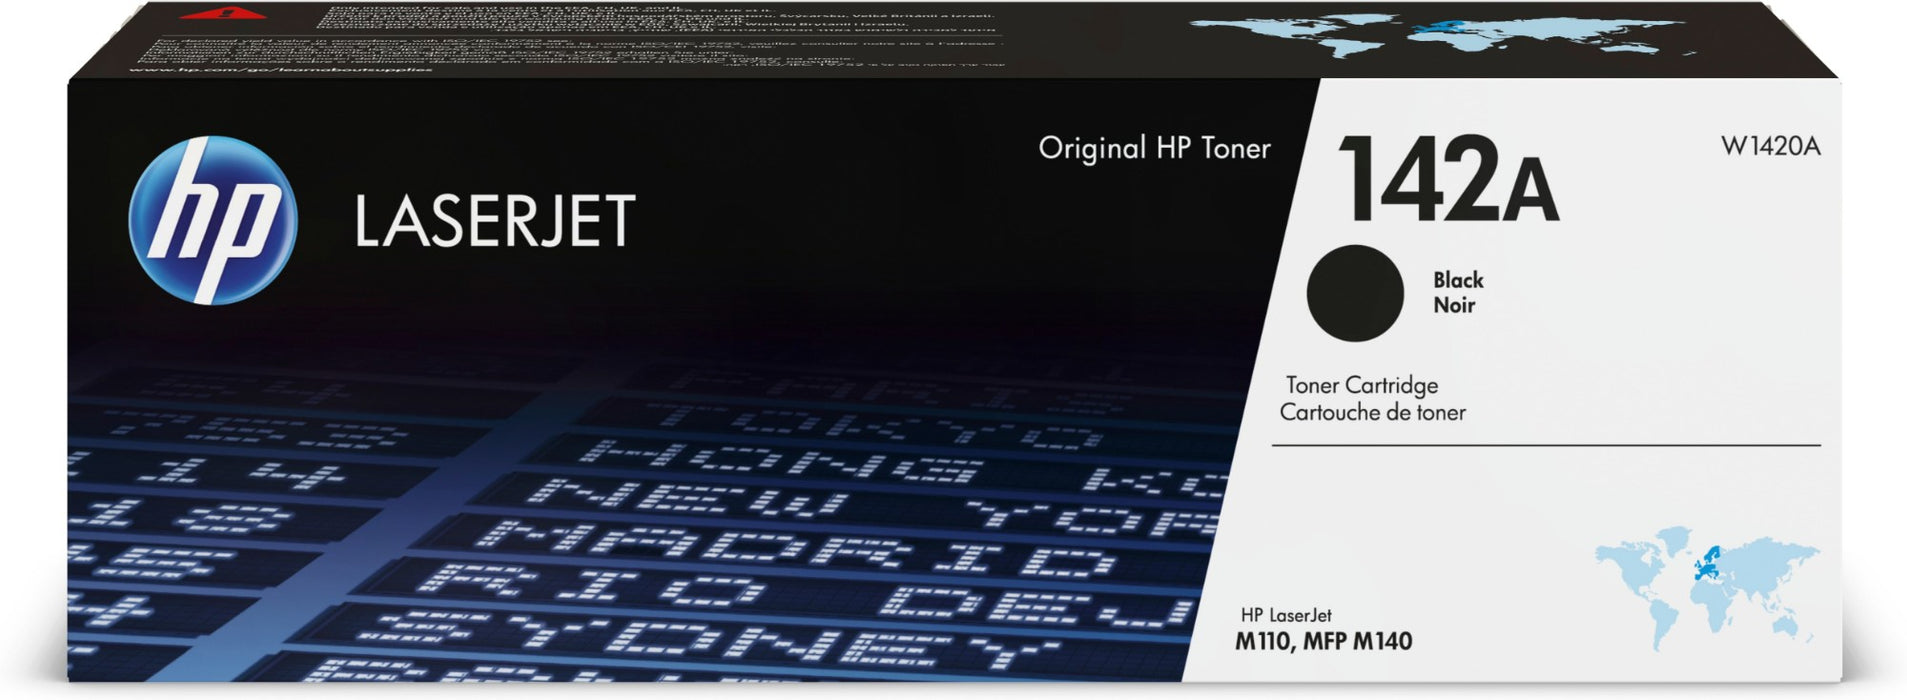 HP 142A (W1420A) Black Toner (Original HP)